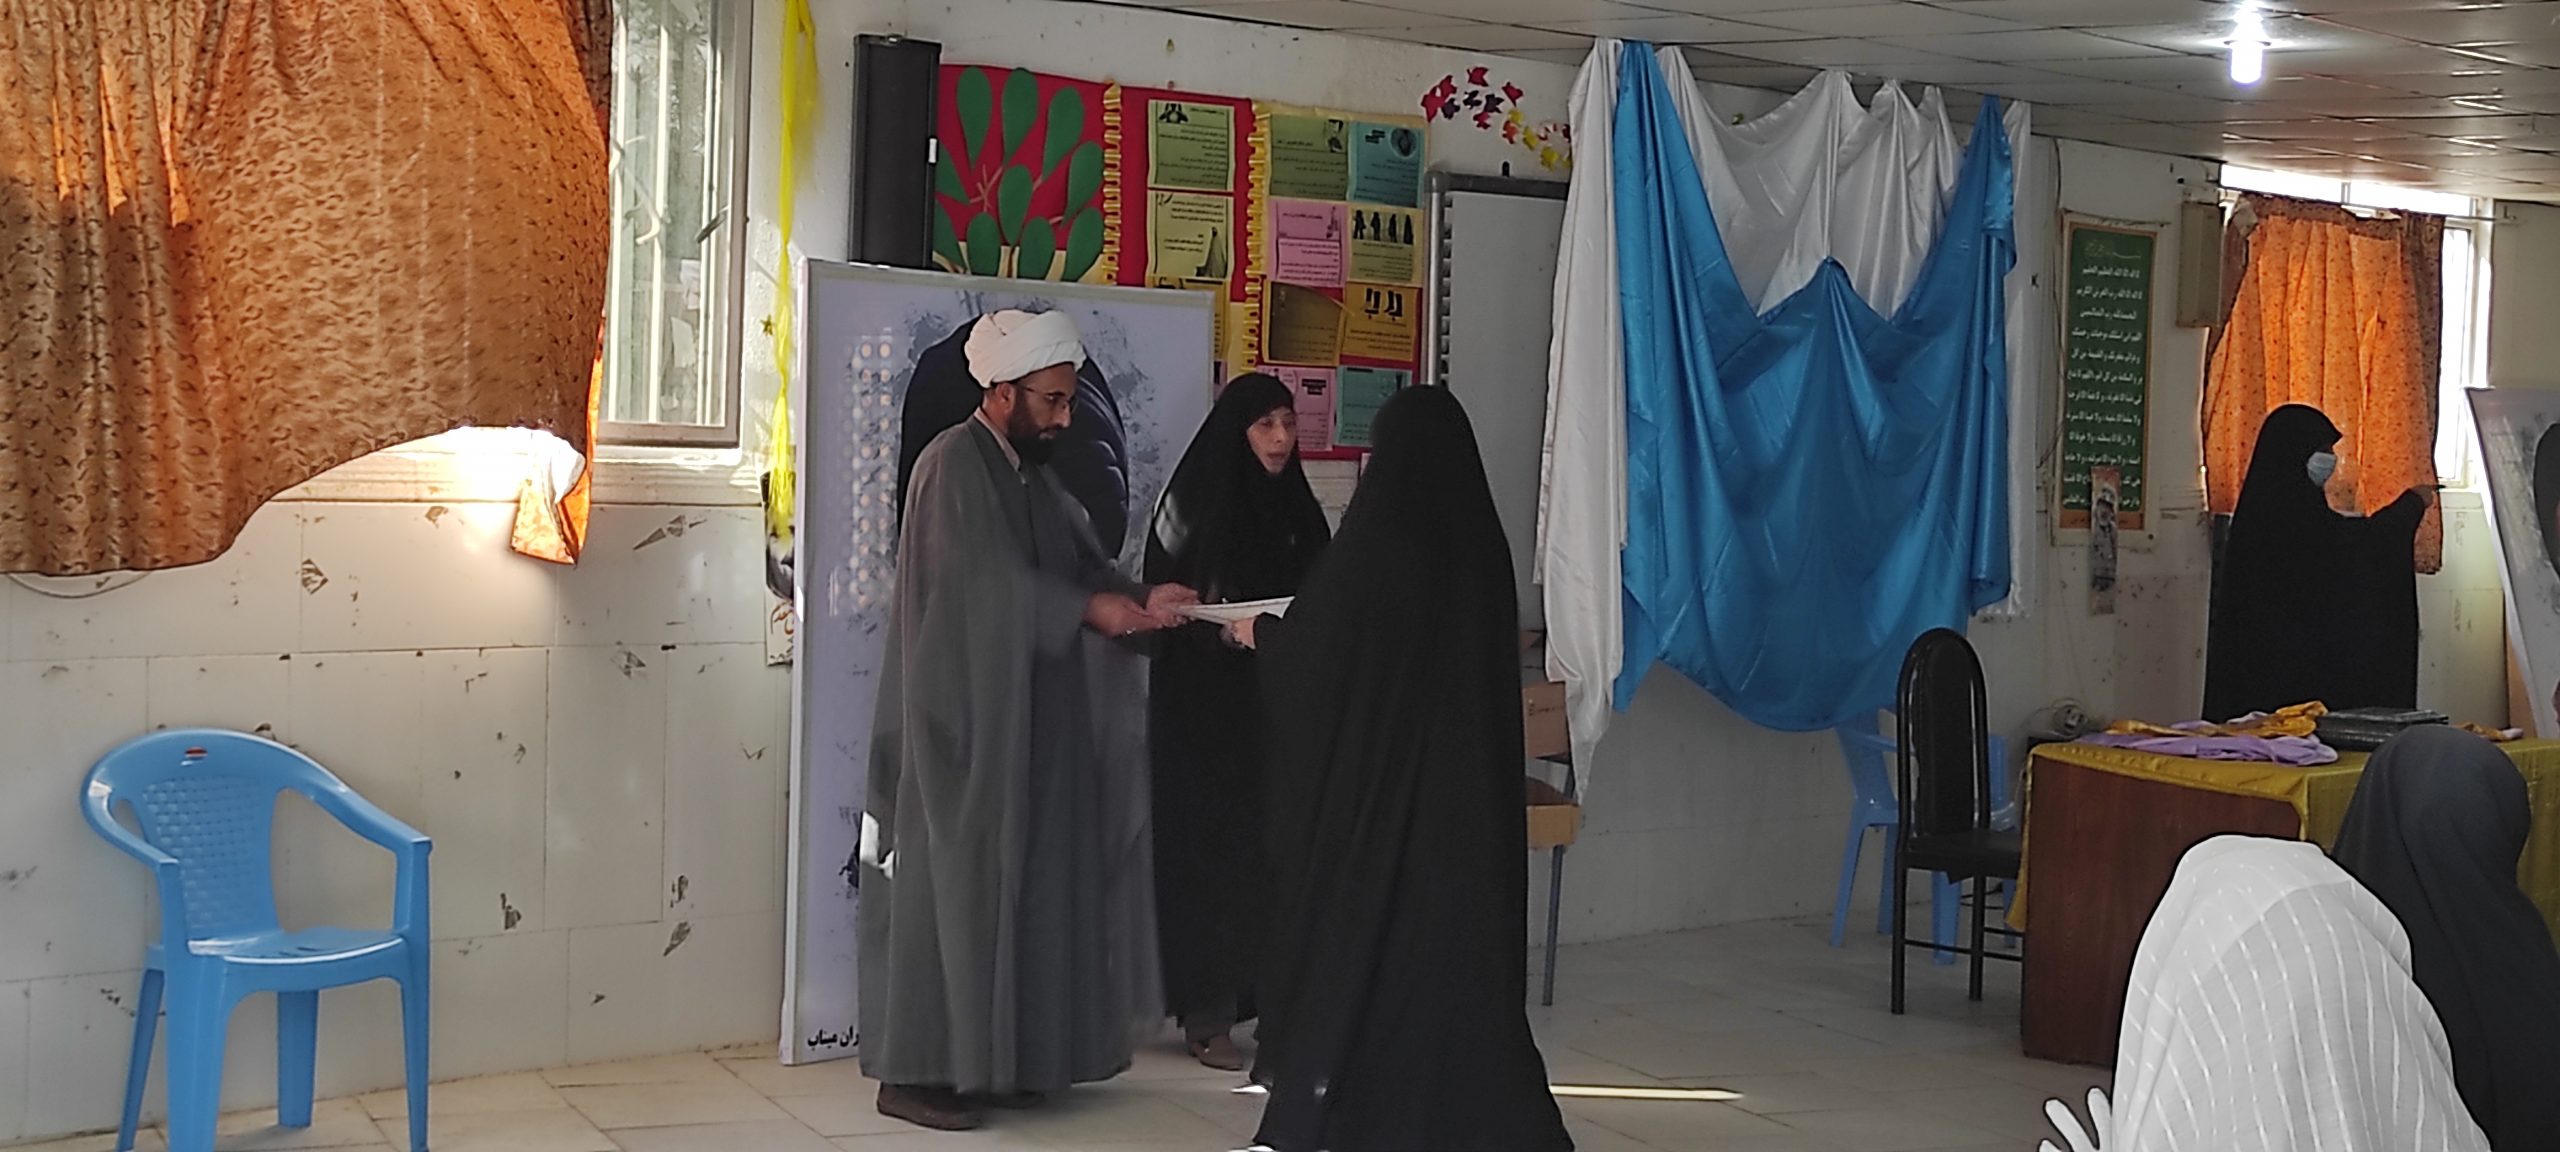 دختران دانش آموز مدرسه صدرا با نام های فاطمه و زهرا در میناب تجلیل شدند